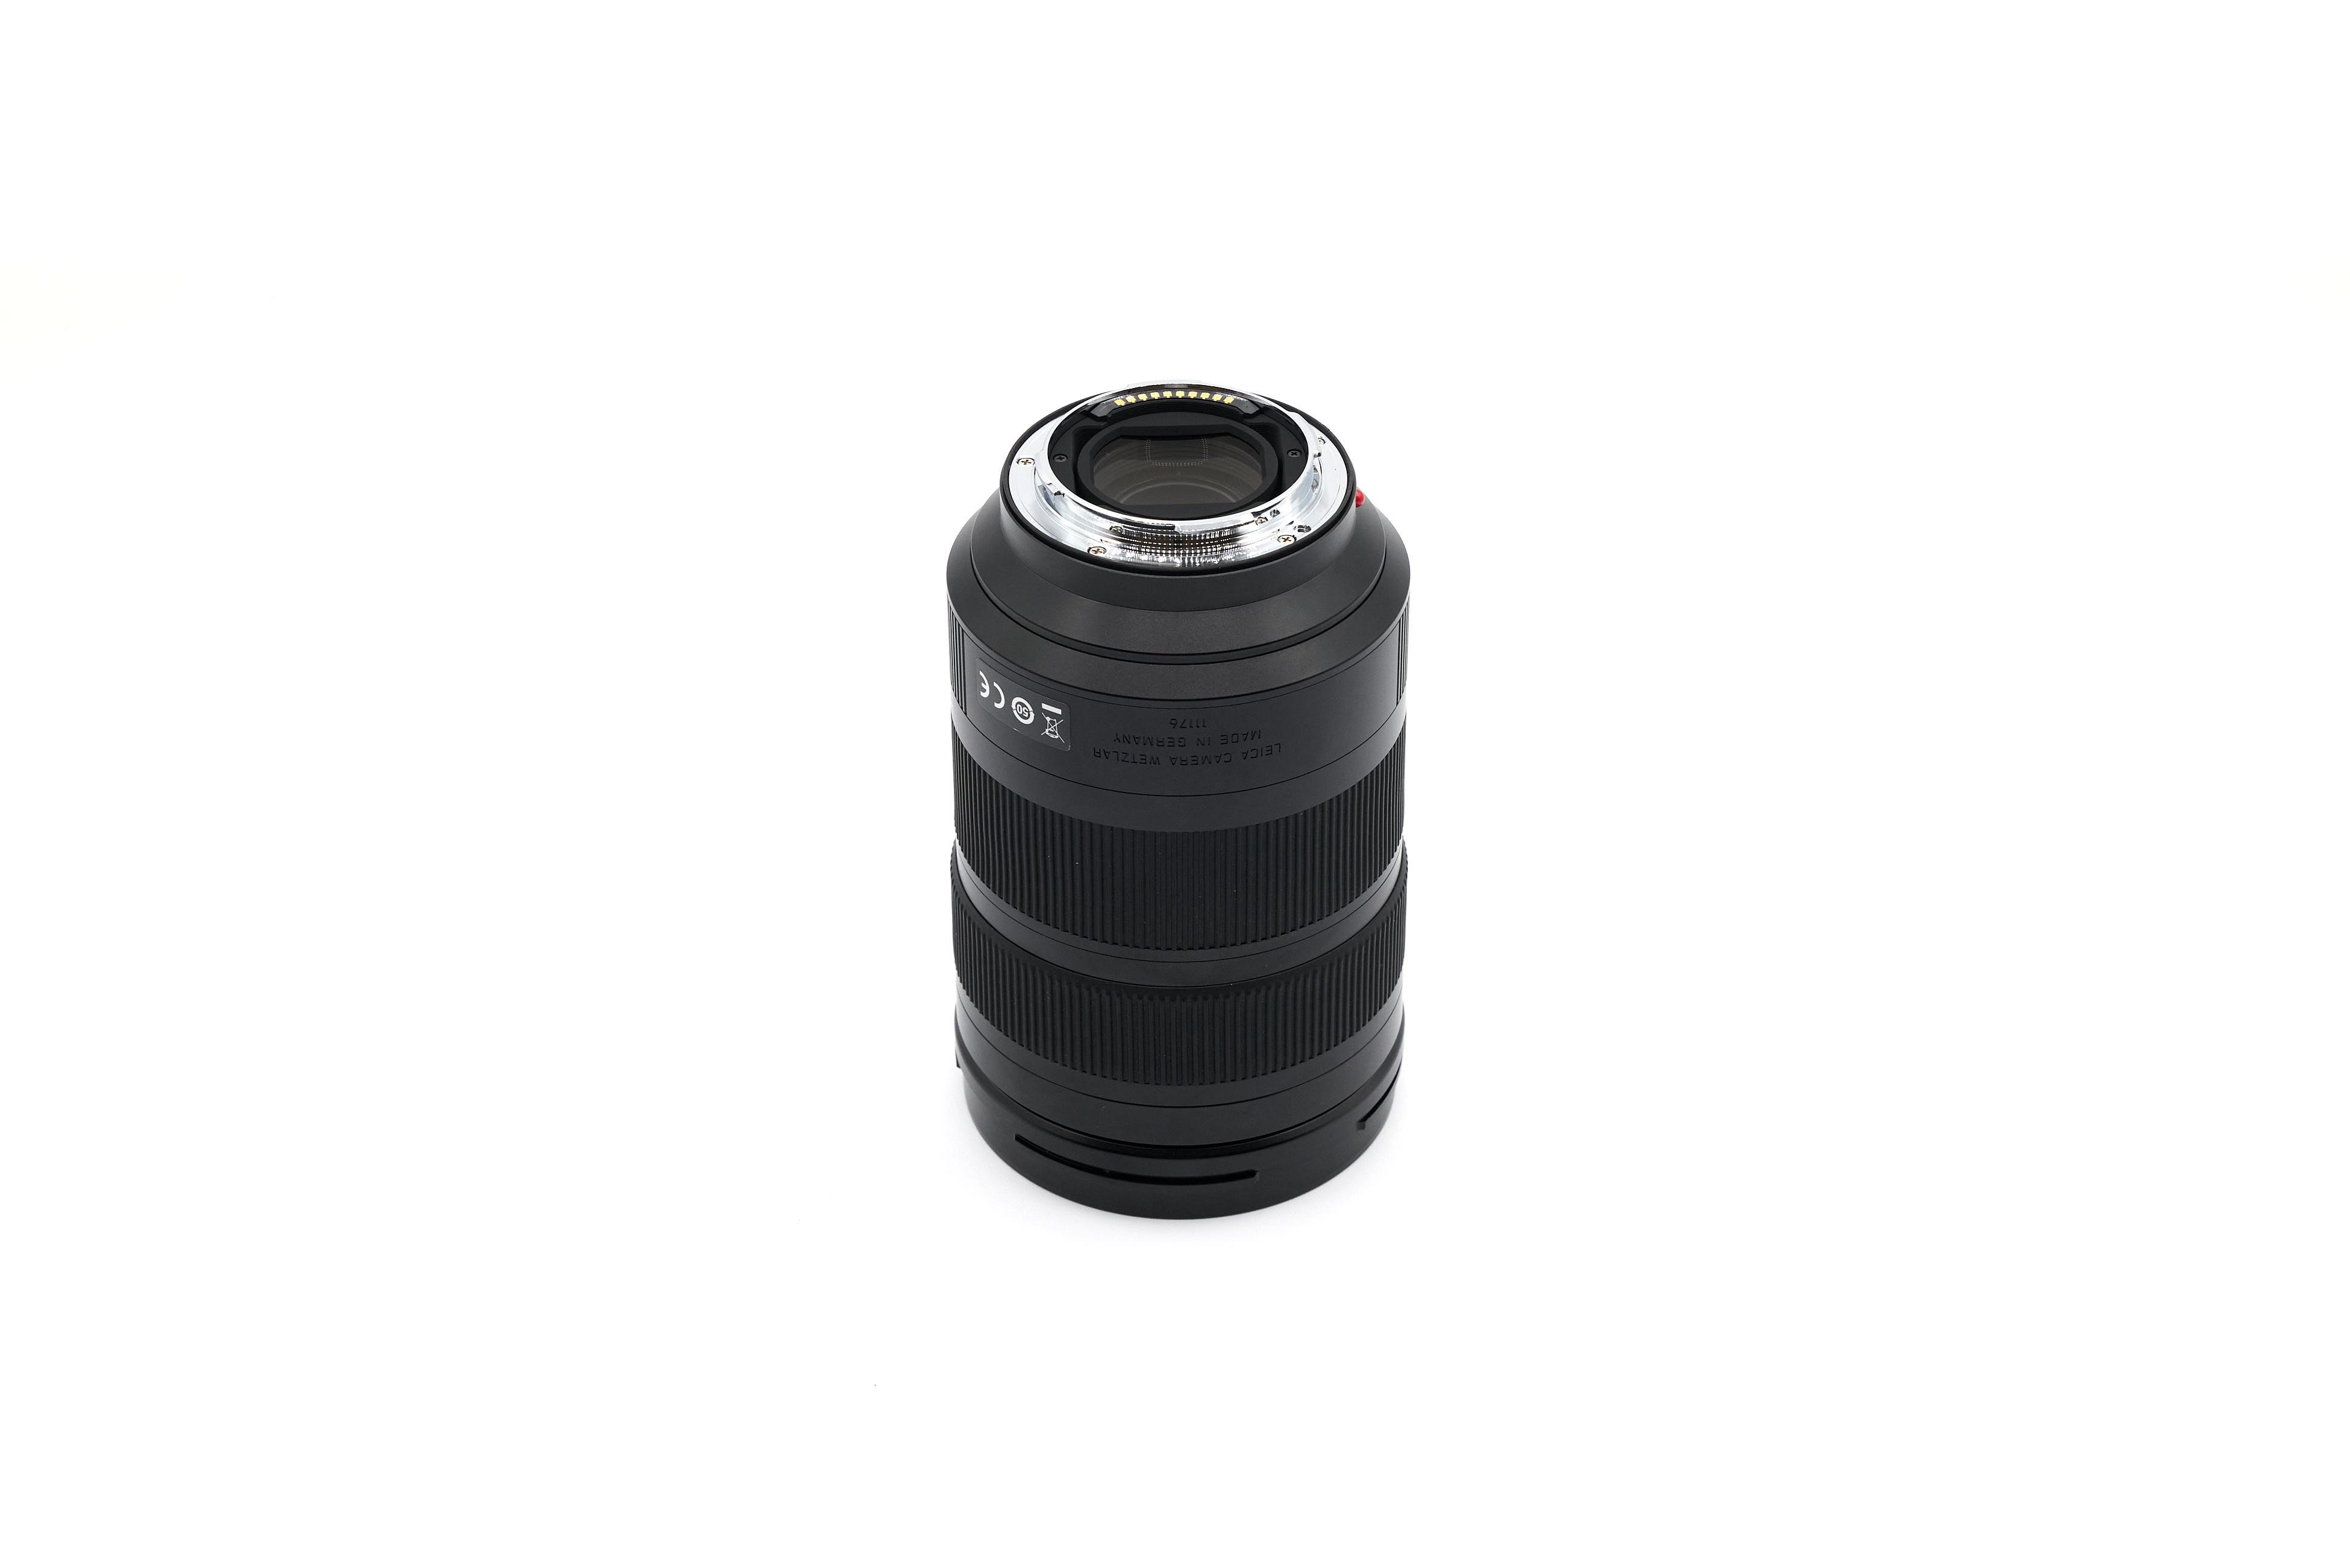 Leica Vario-Elmarit-SL 24-90mm f/2.8-4 ASPH. 11176